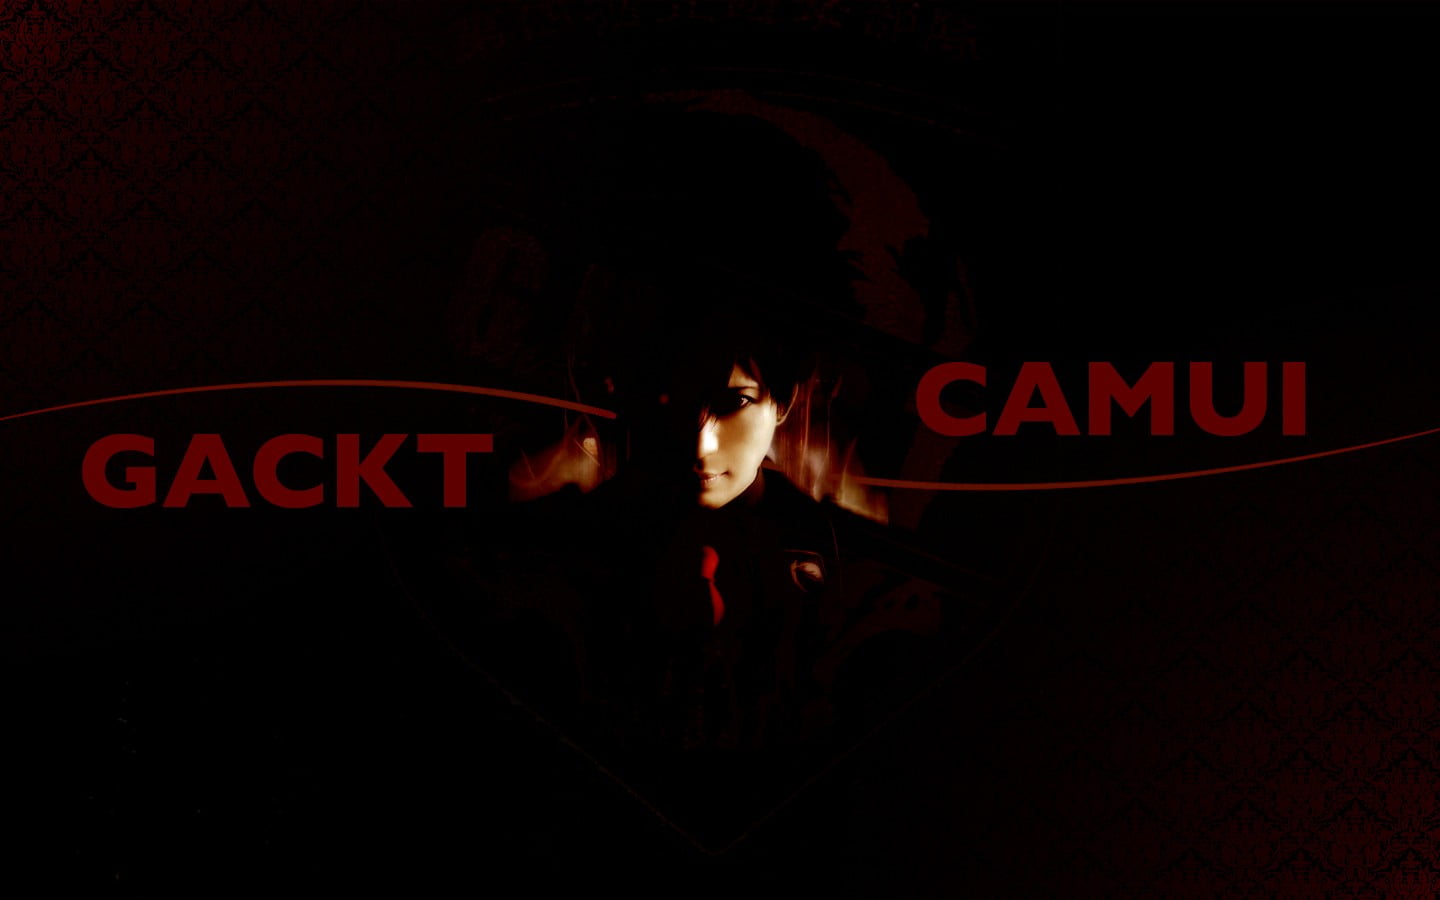 Gackt Camui Logo Gackt Musician Hd Wallpaper Wallpaper Flare